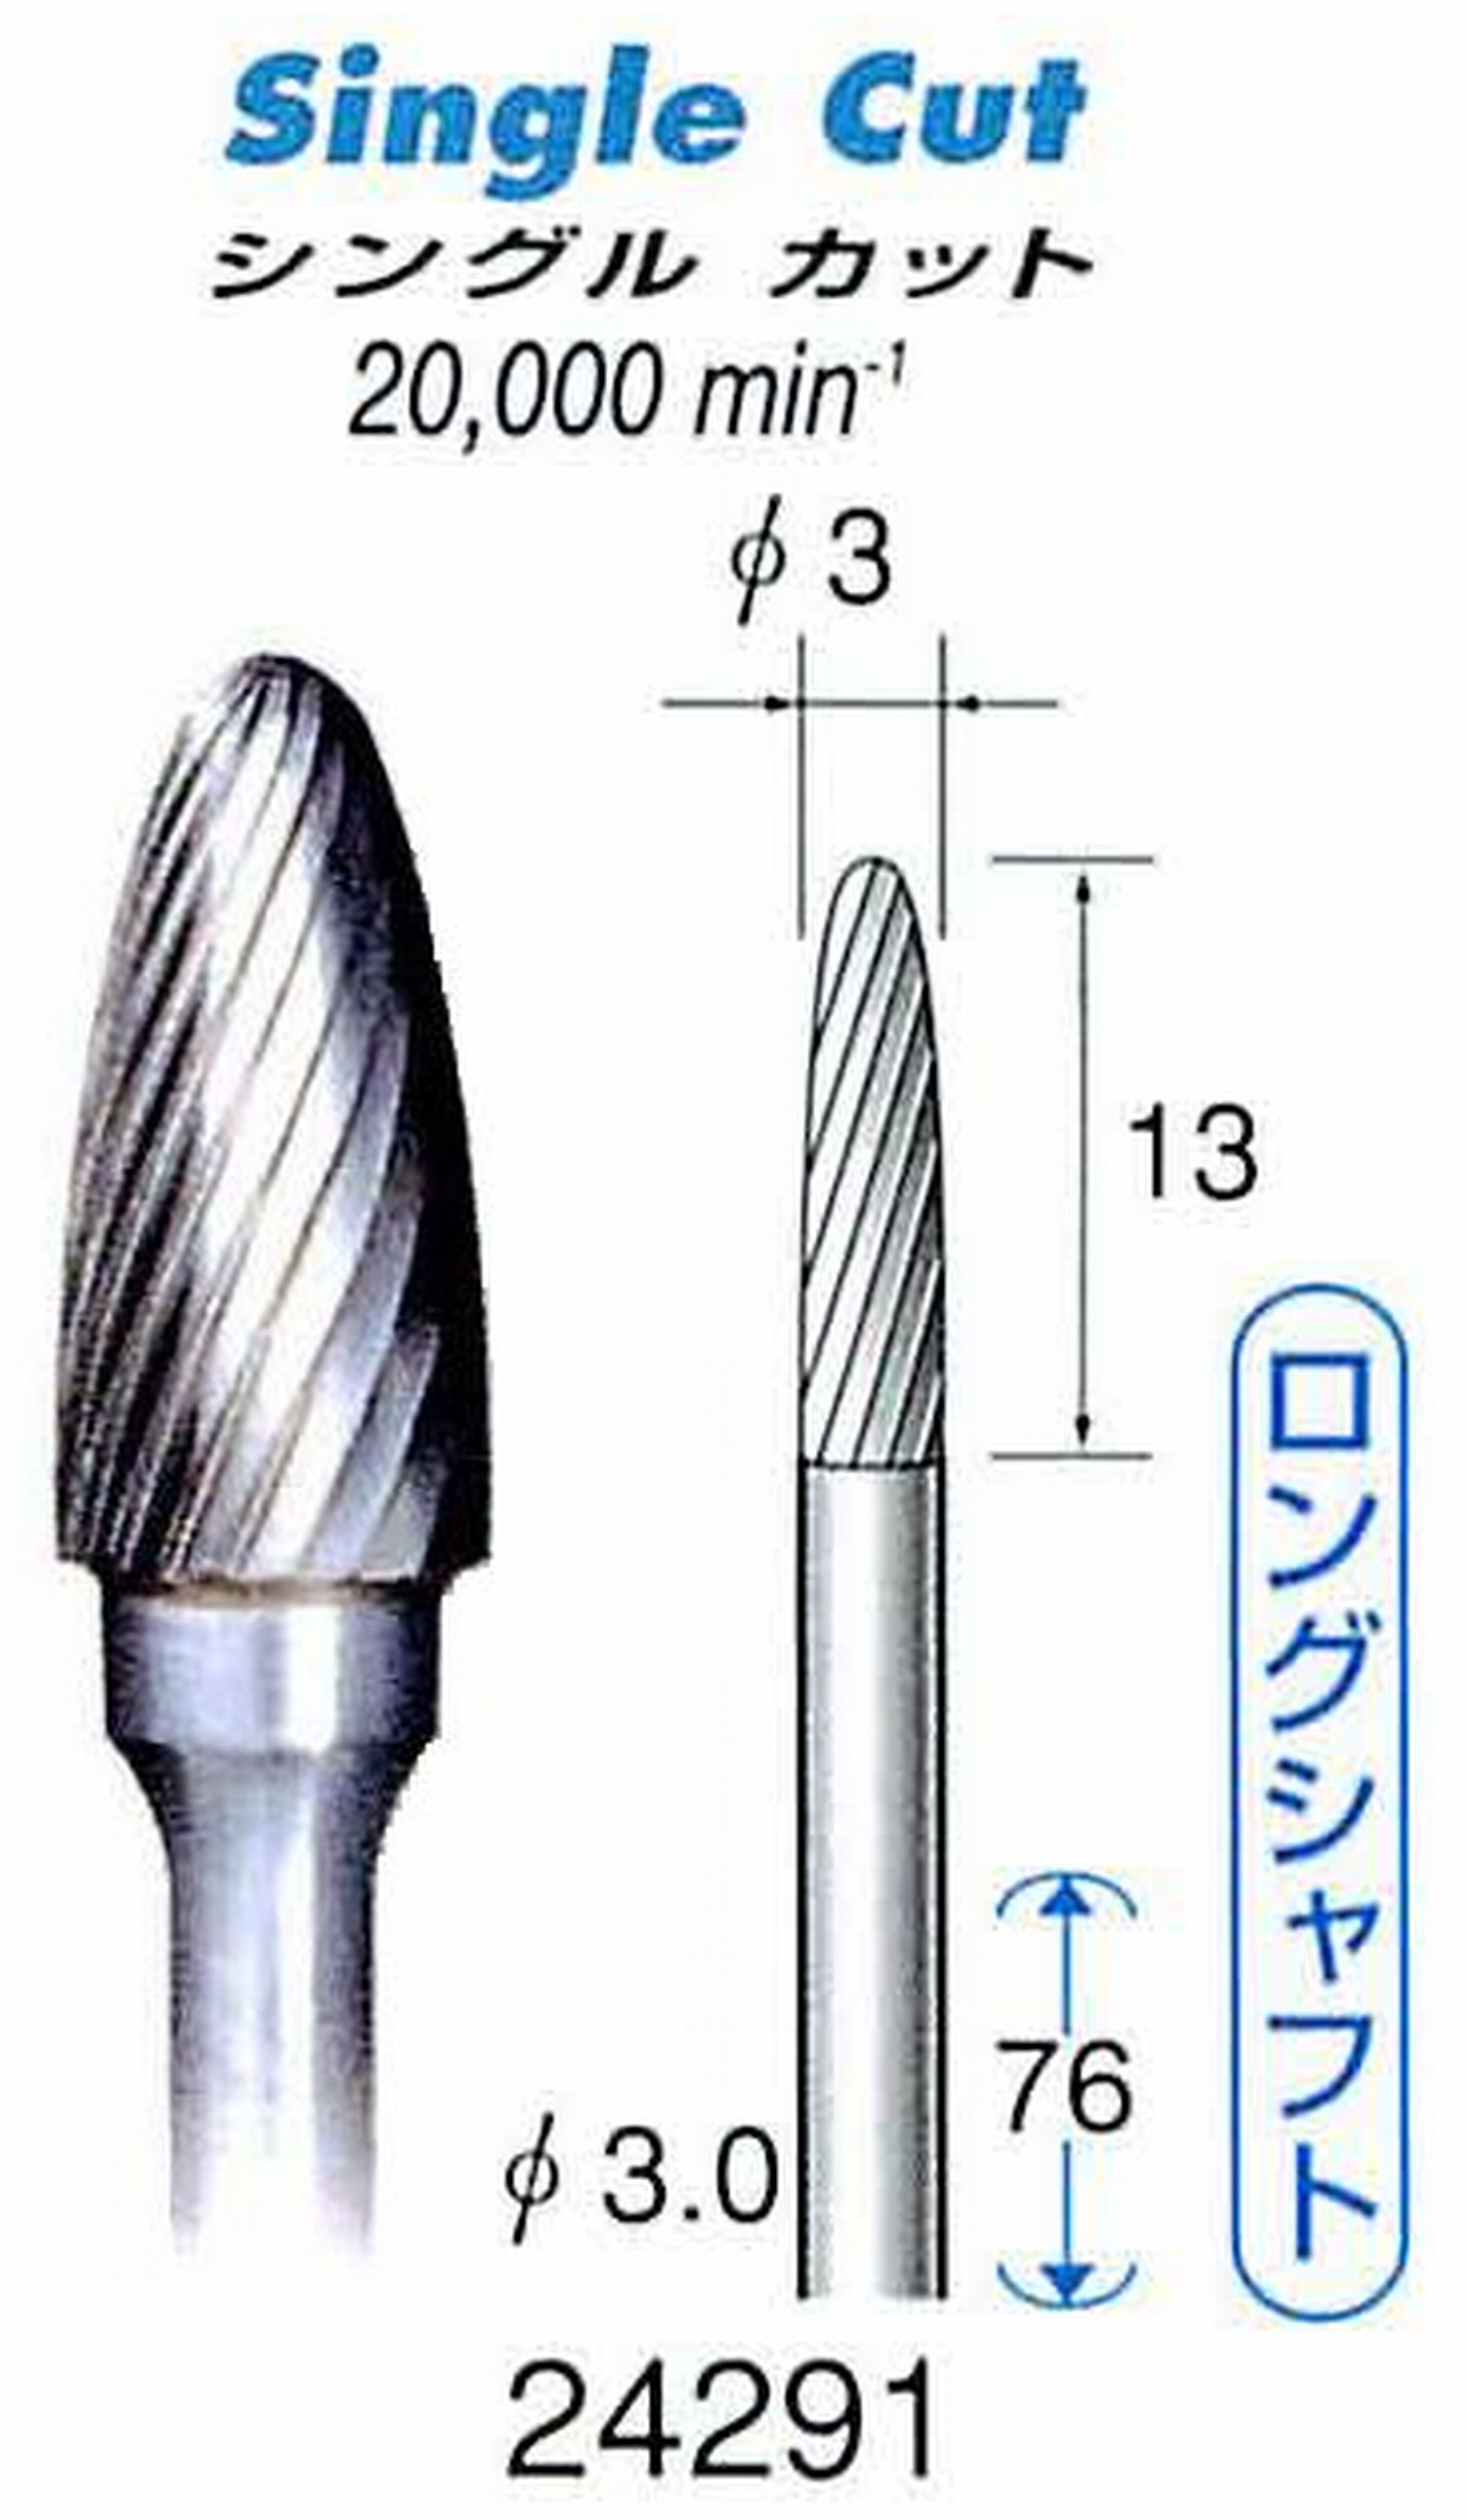 ナカニシ/NAKANISHI 超硬カッター(ロングシャフト) 軸径(シャンク)φ3.0mm 24291